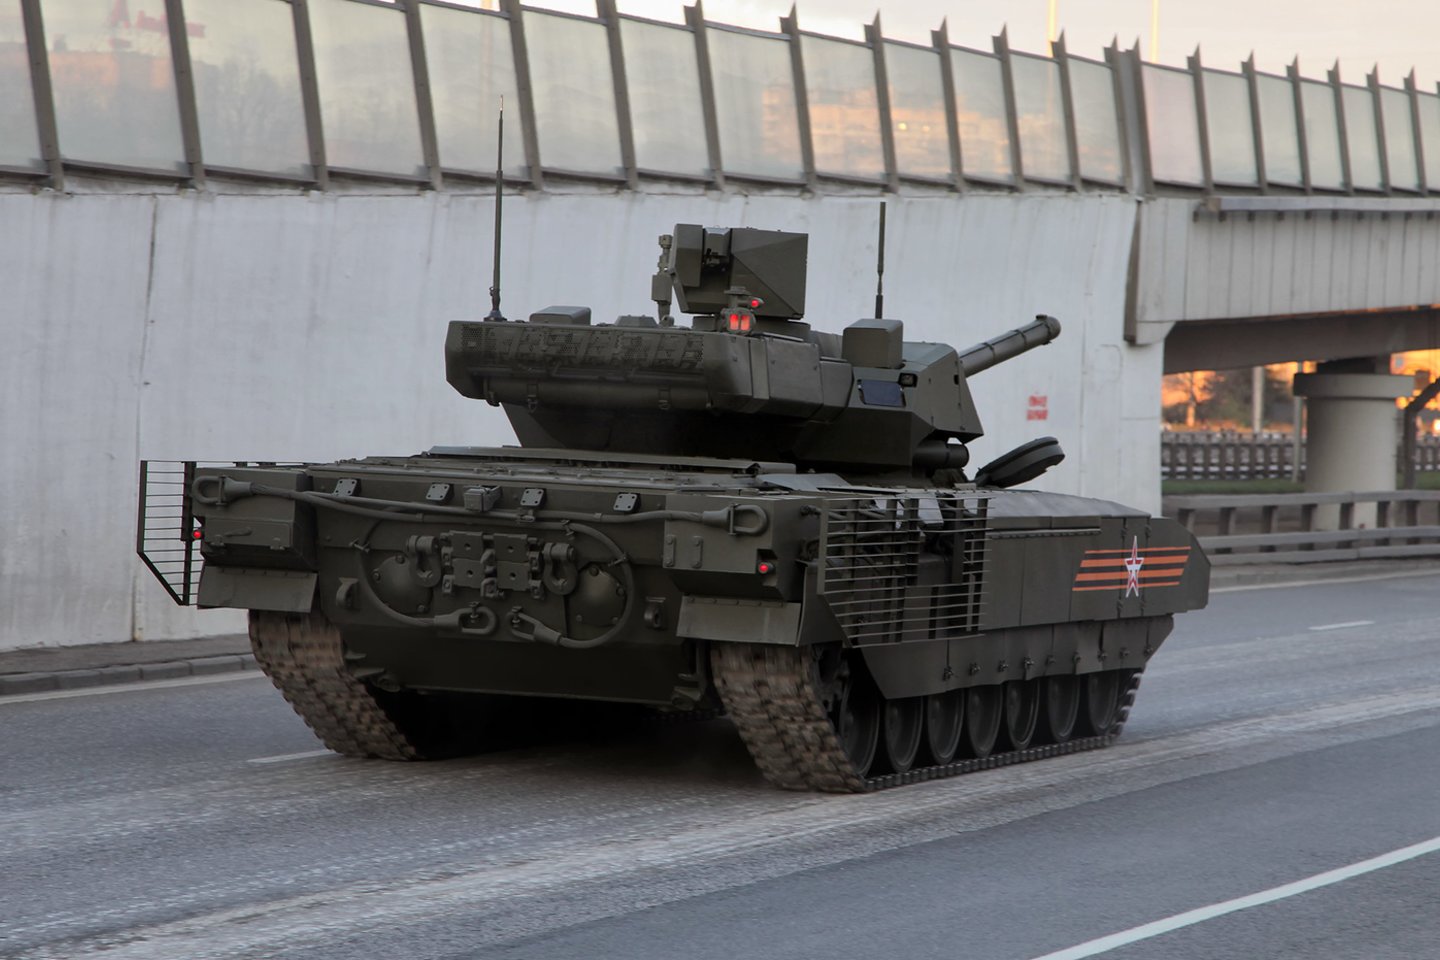  Rusija nori, kad kitos šalys pirktų jos pažangųjį tanką „T-14 Armata“ – tačiau pati Rusija neatrodo labai susidomėjusi naujuoju kūriniu.<br> Wikimedia commons.